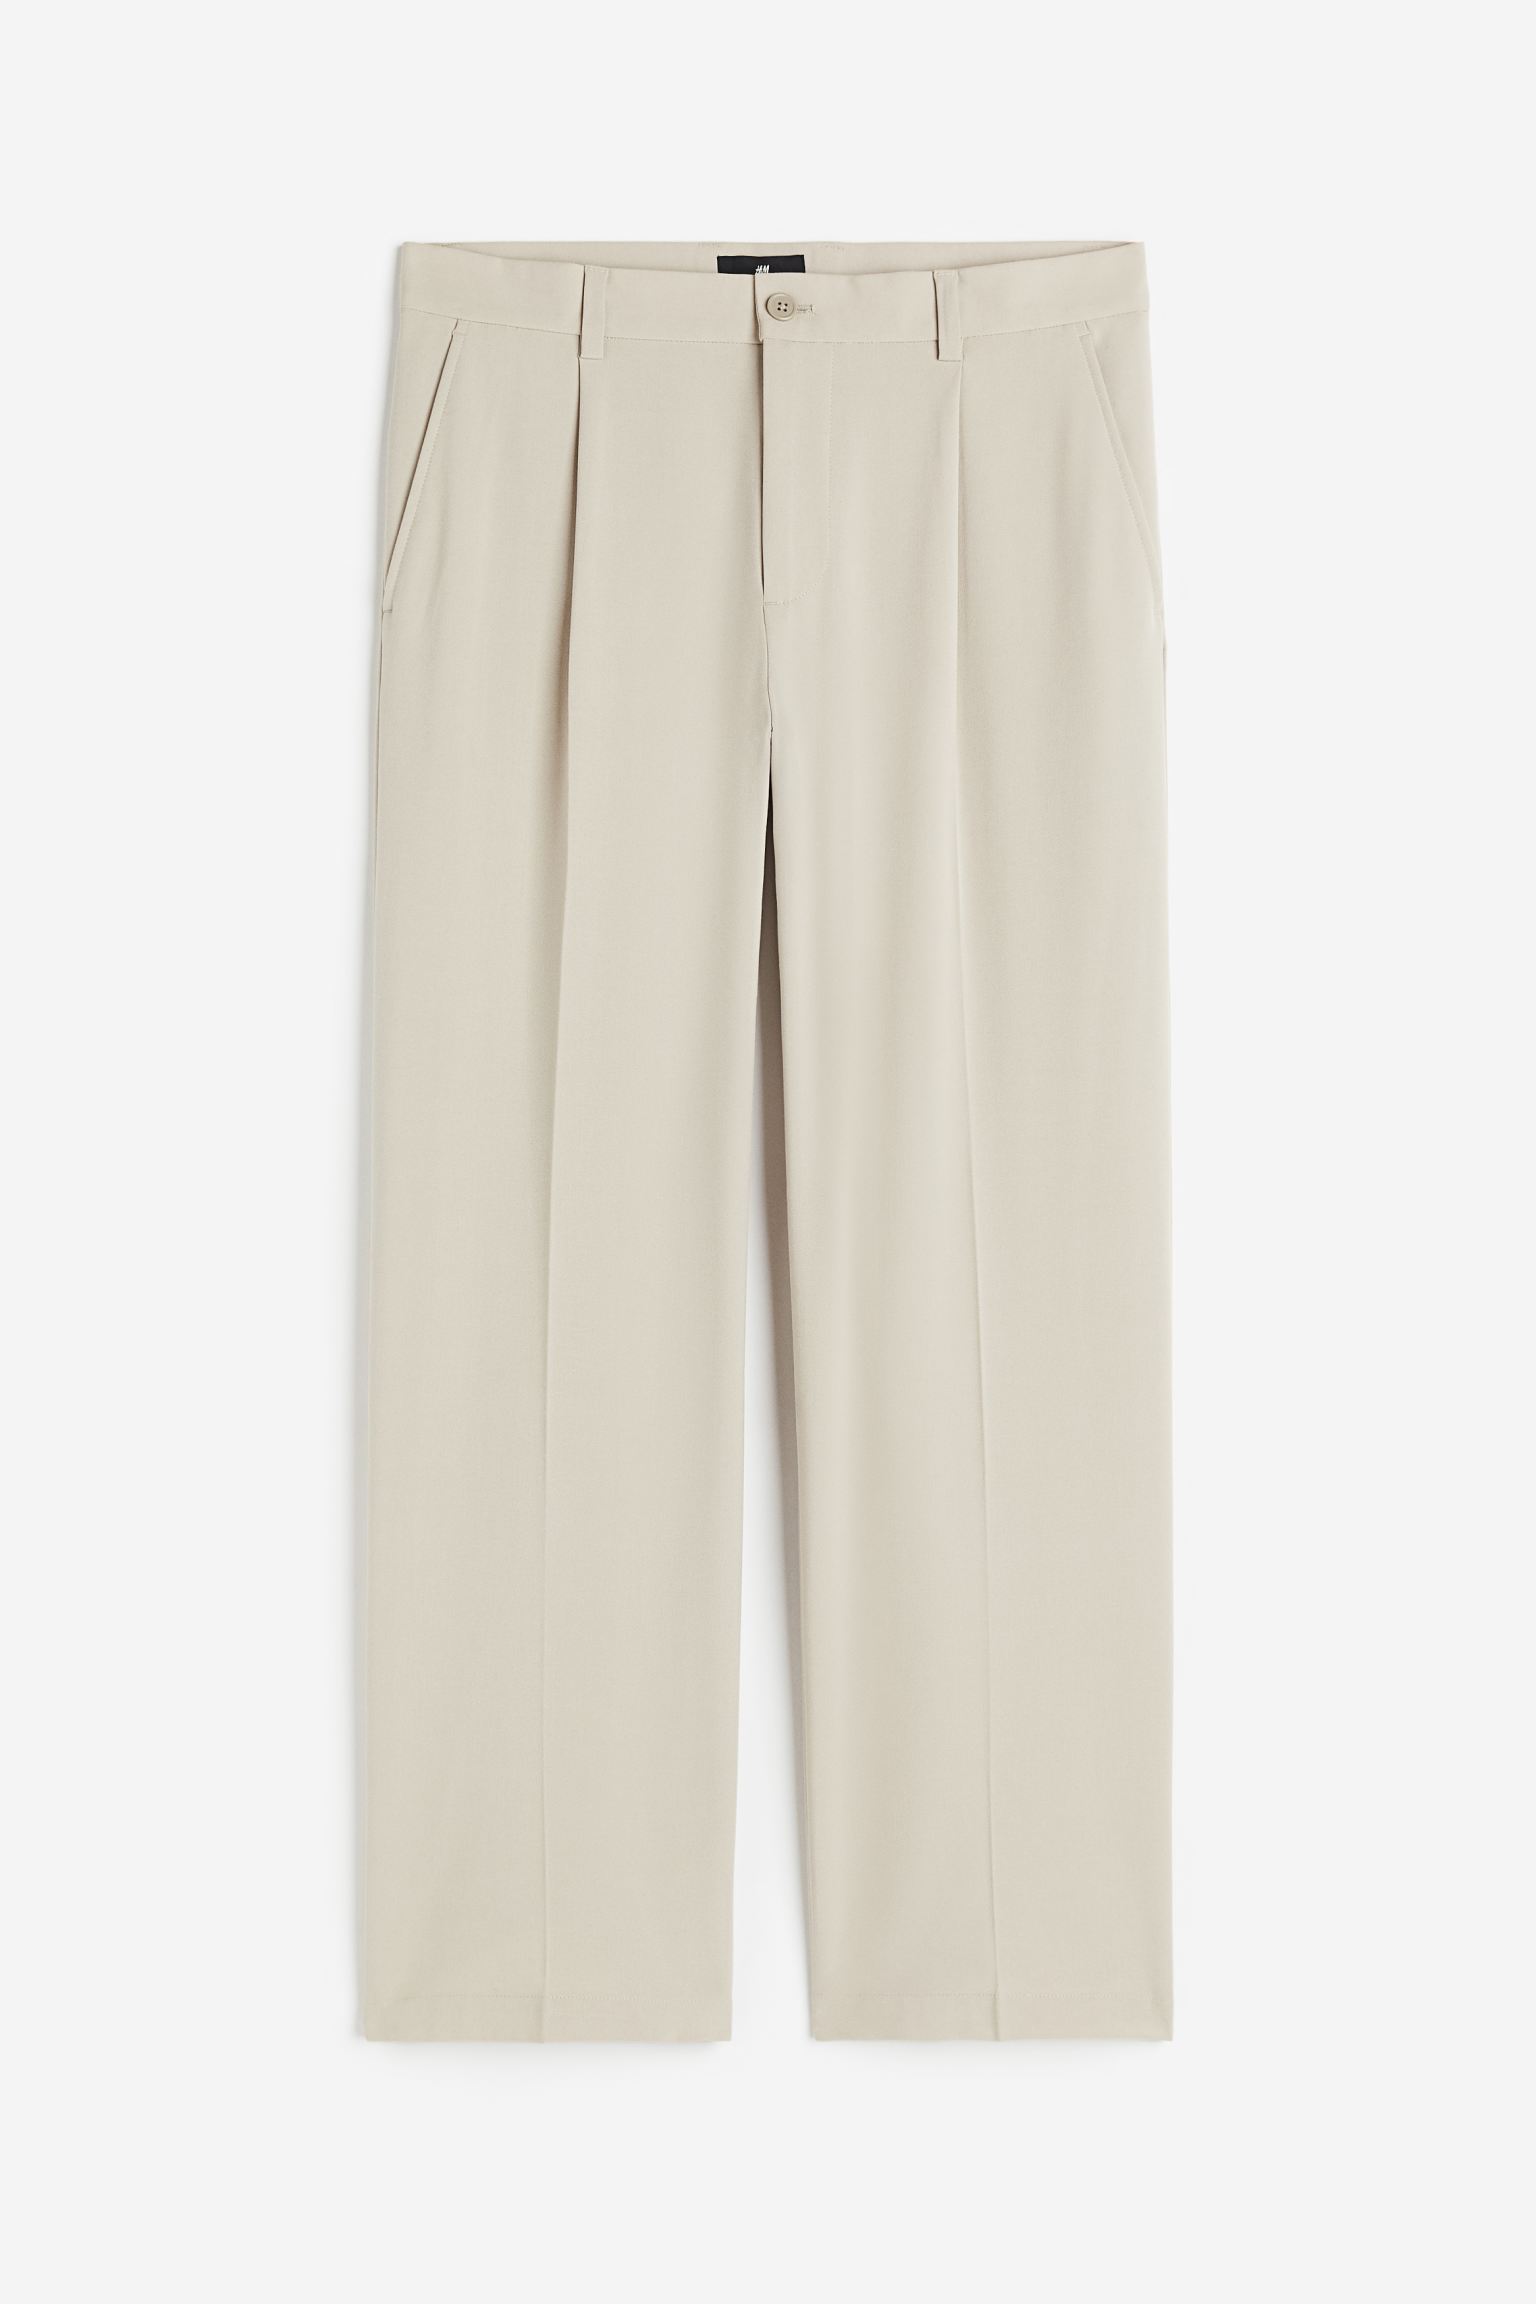 Брюки H&M Loose Fit Dress, светло-бежевый брюки свободного кроя со складками zara бирюзовый